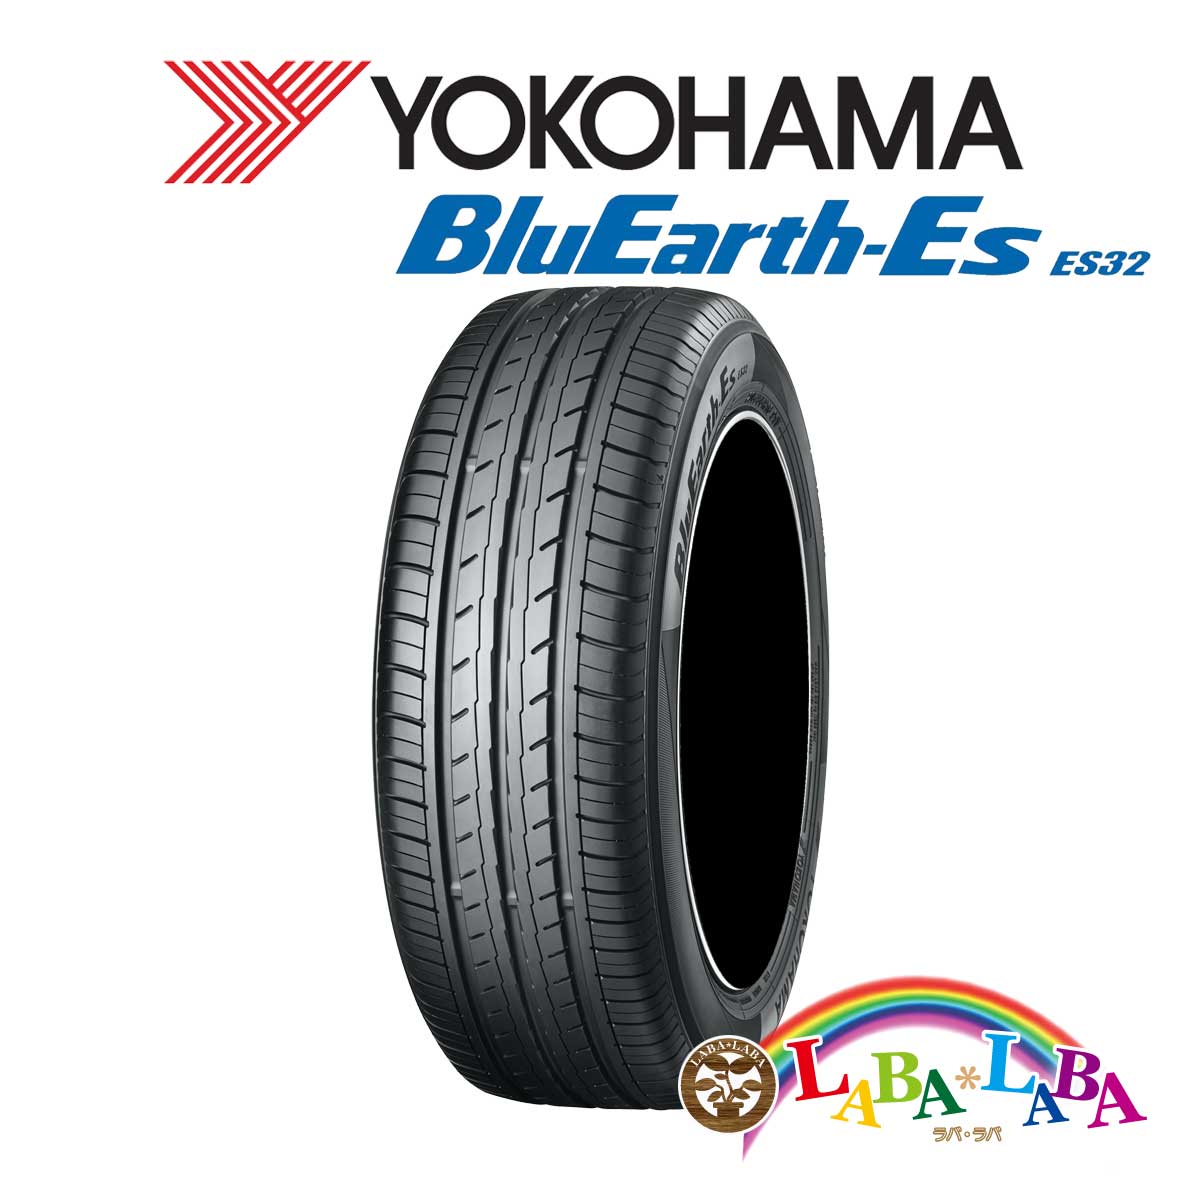 送料無料 国産タイヤ サマータイヤ 新品 タイヤのみ スーパーセール期間限定 4本SET 2021特集 YOKOHAMA ヨコハマ 50R18 95V 4本セット 225 ブルーアース ES32 BluEarth-Es